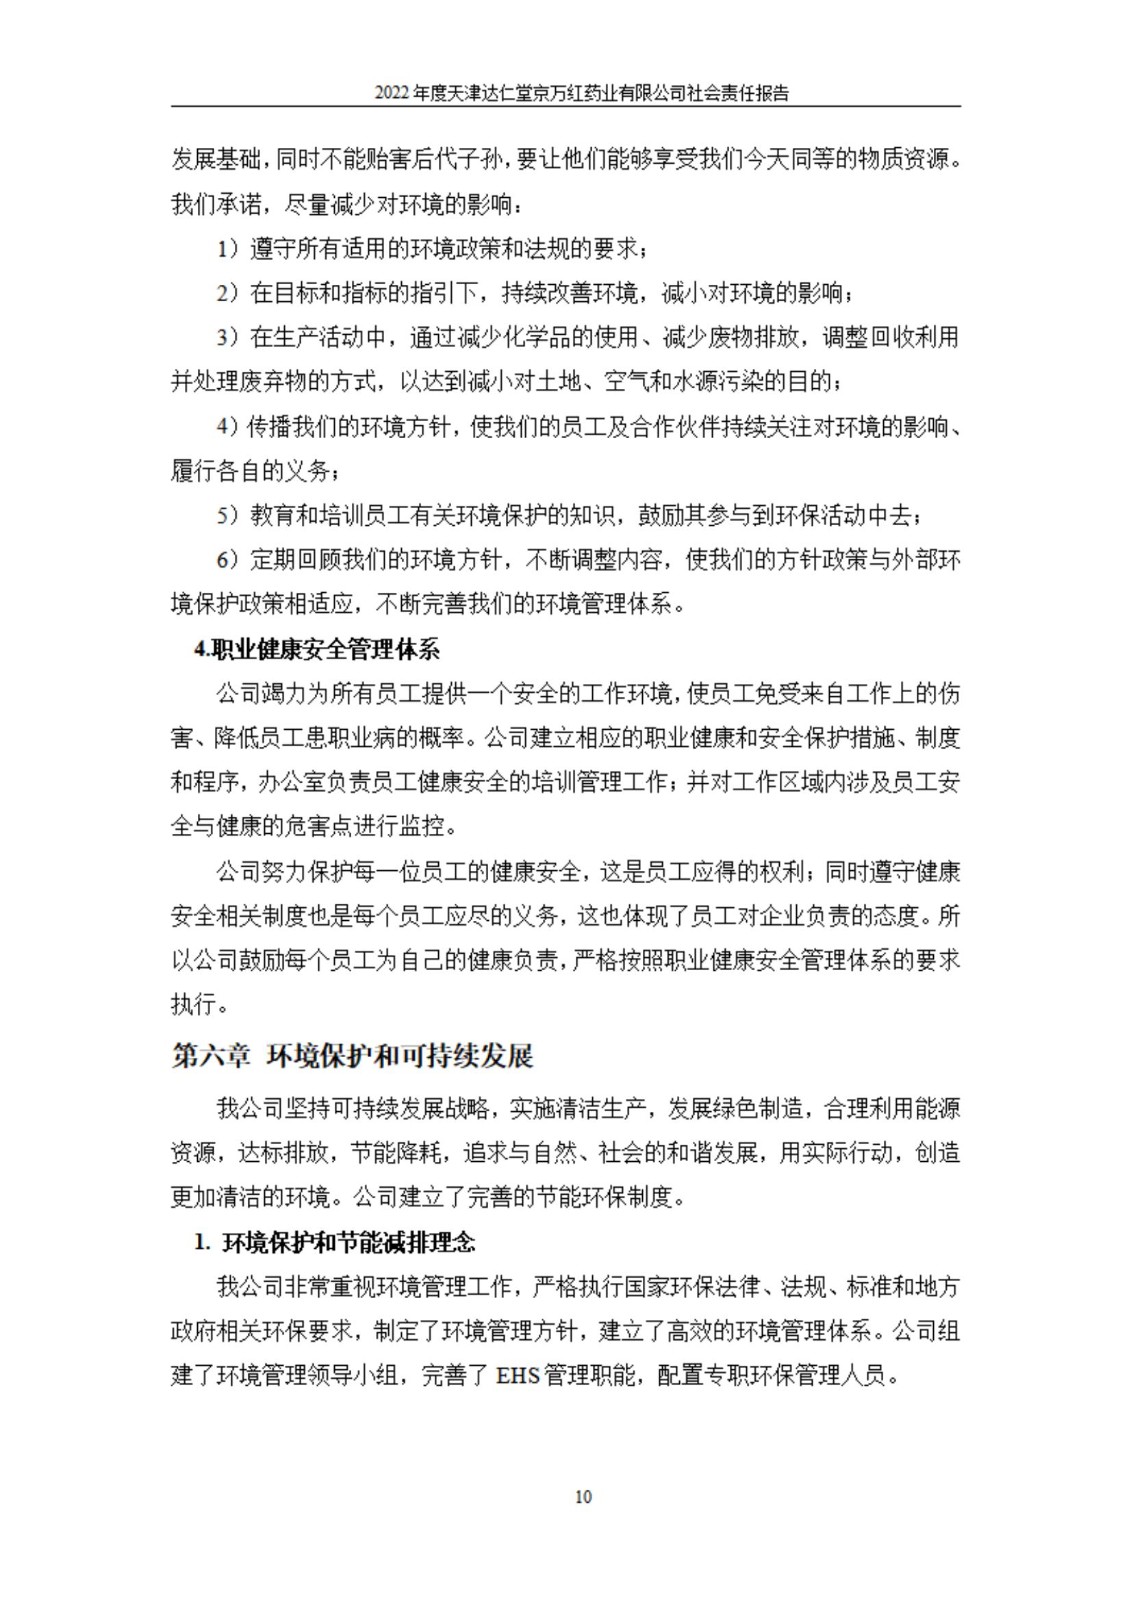 天津达仁堂京万红药业有限公司2022年度社会责任报告_10.jpg